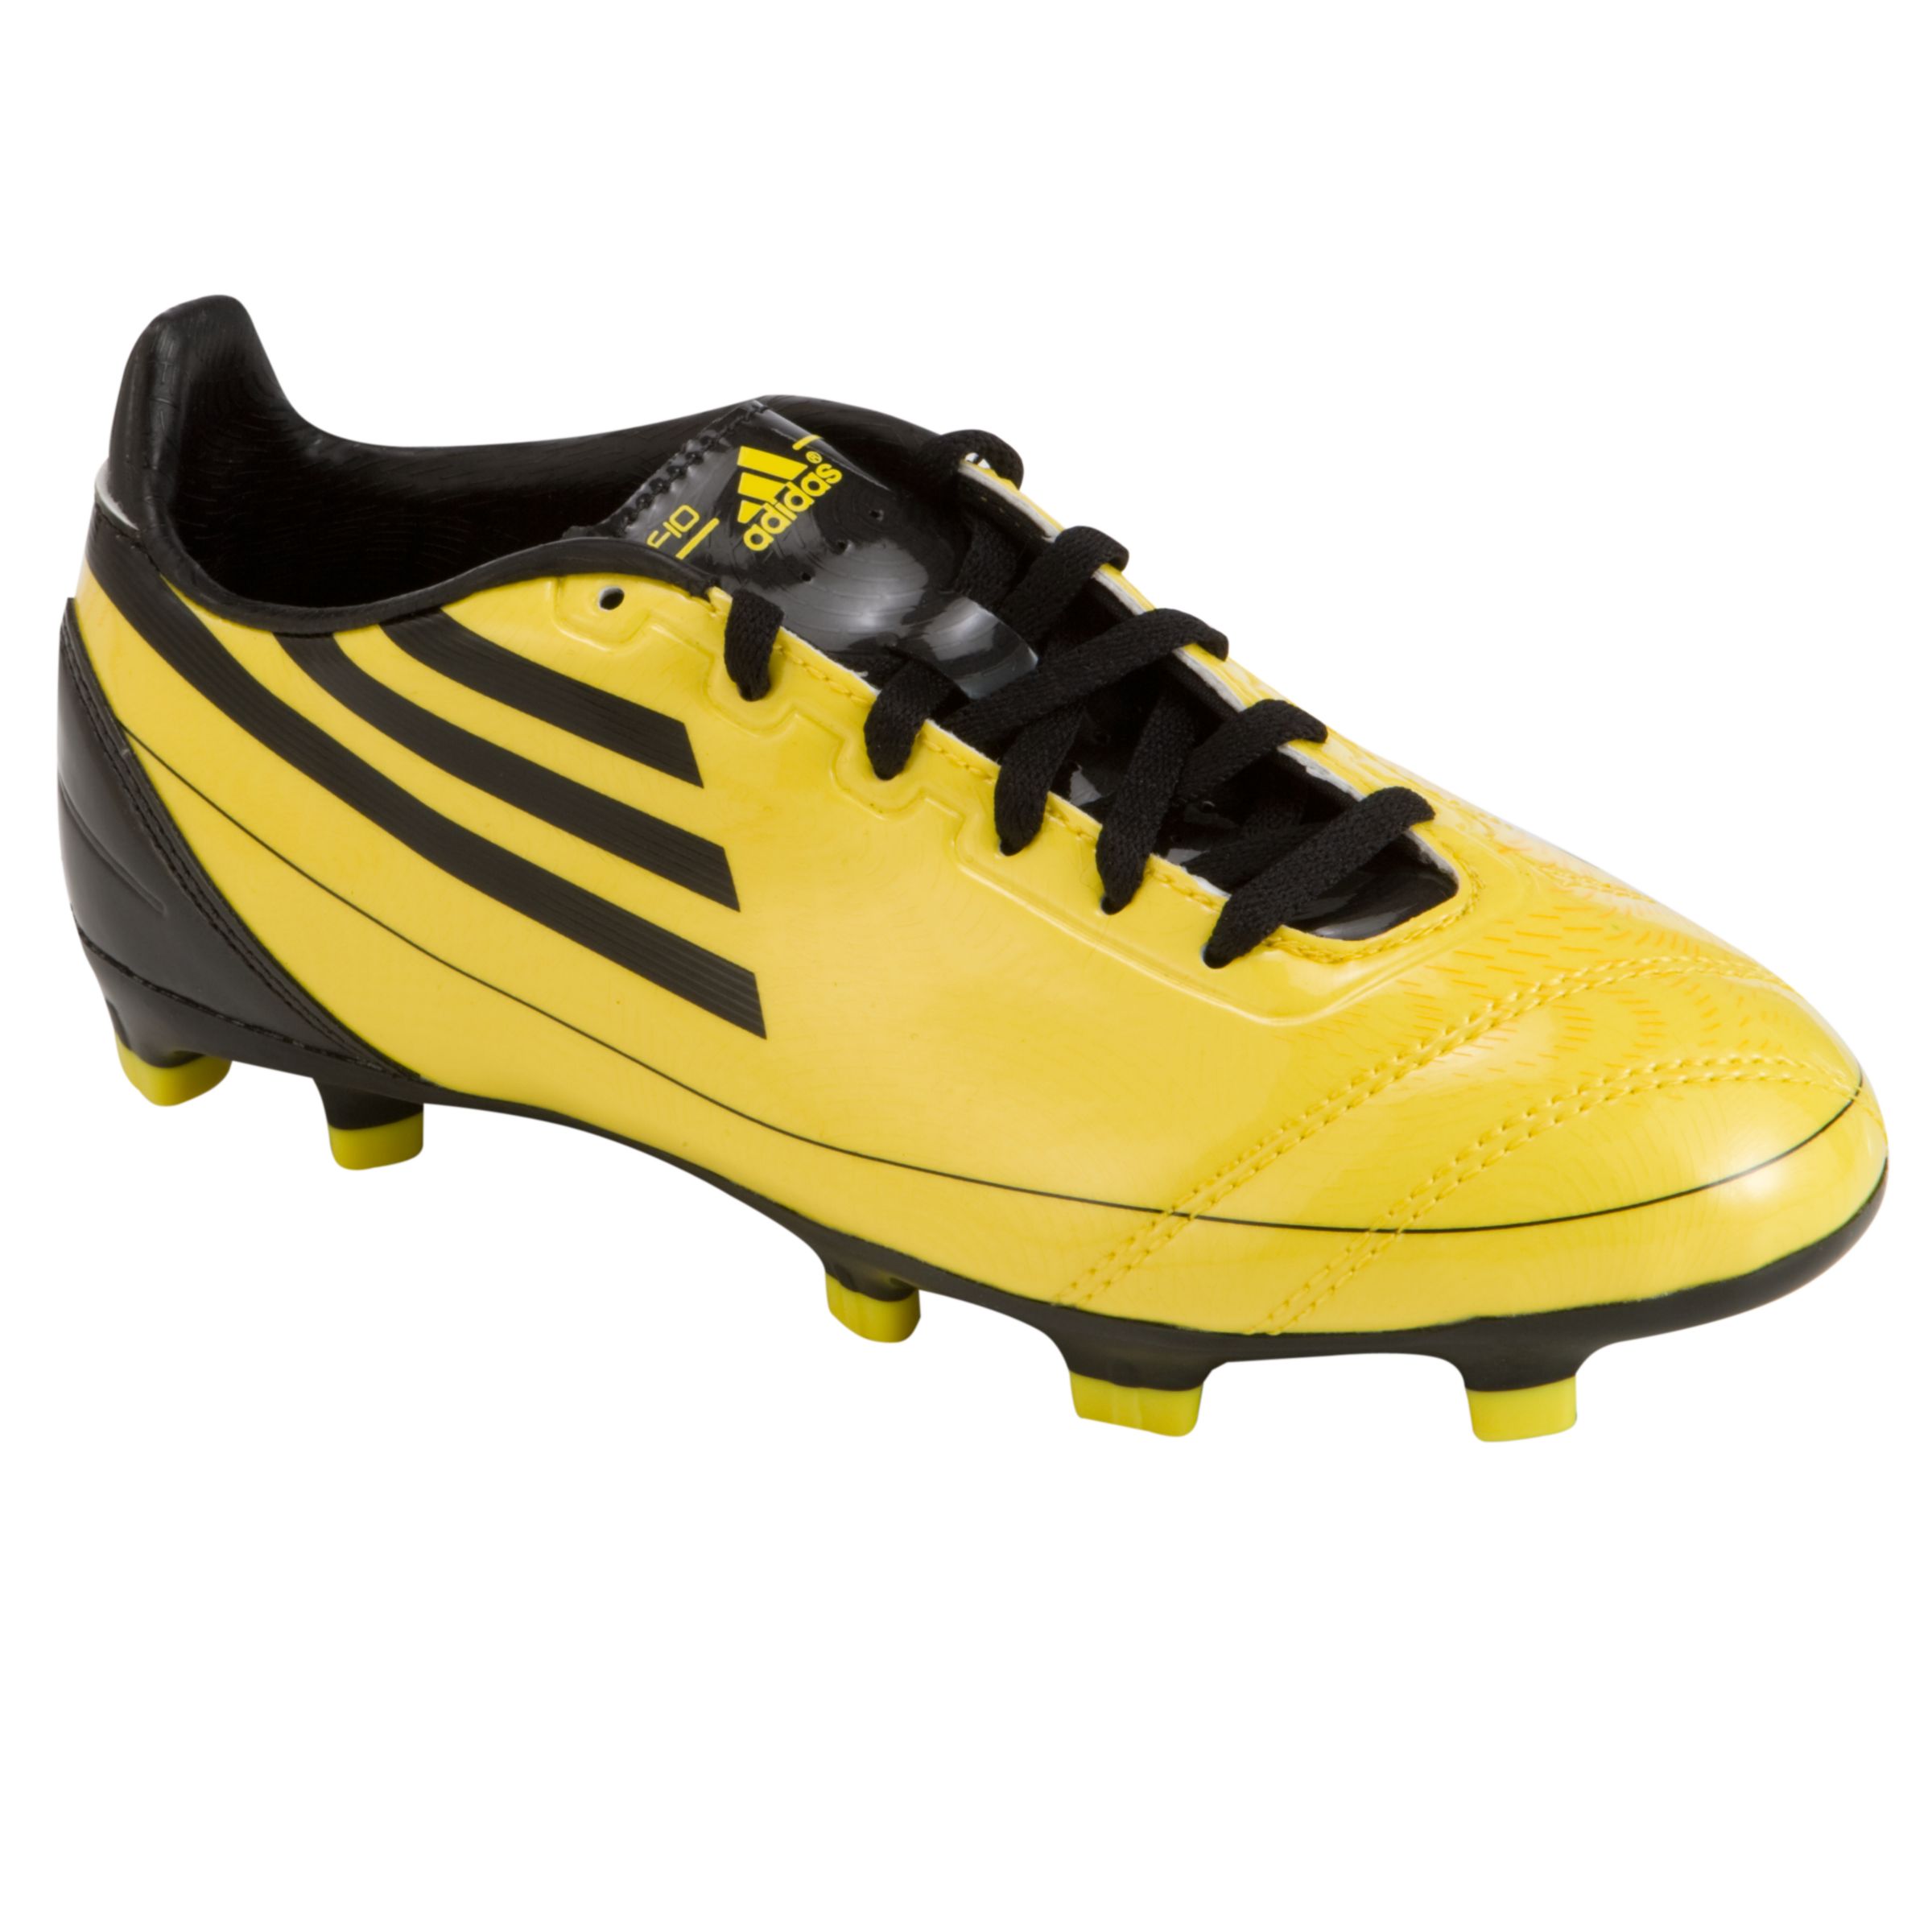 F10 TRX TF Football Boots, Yellow/black